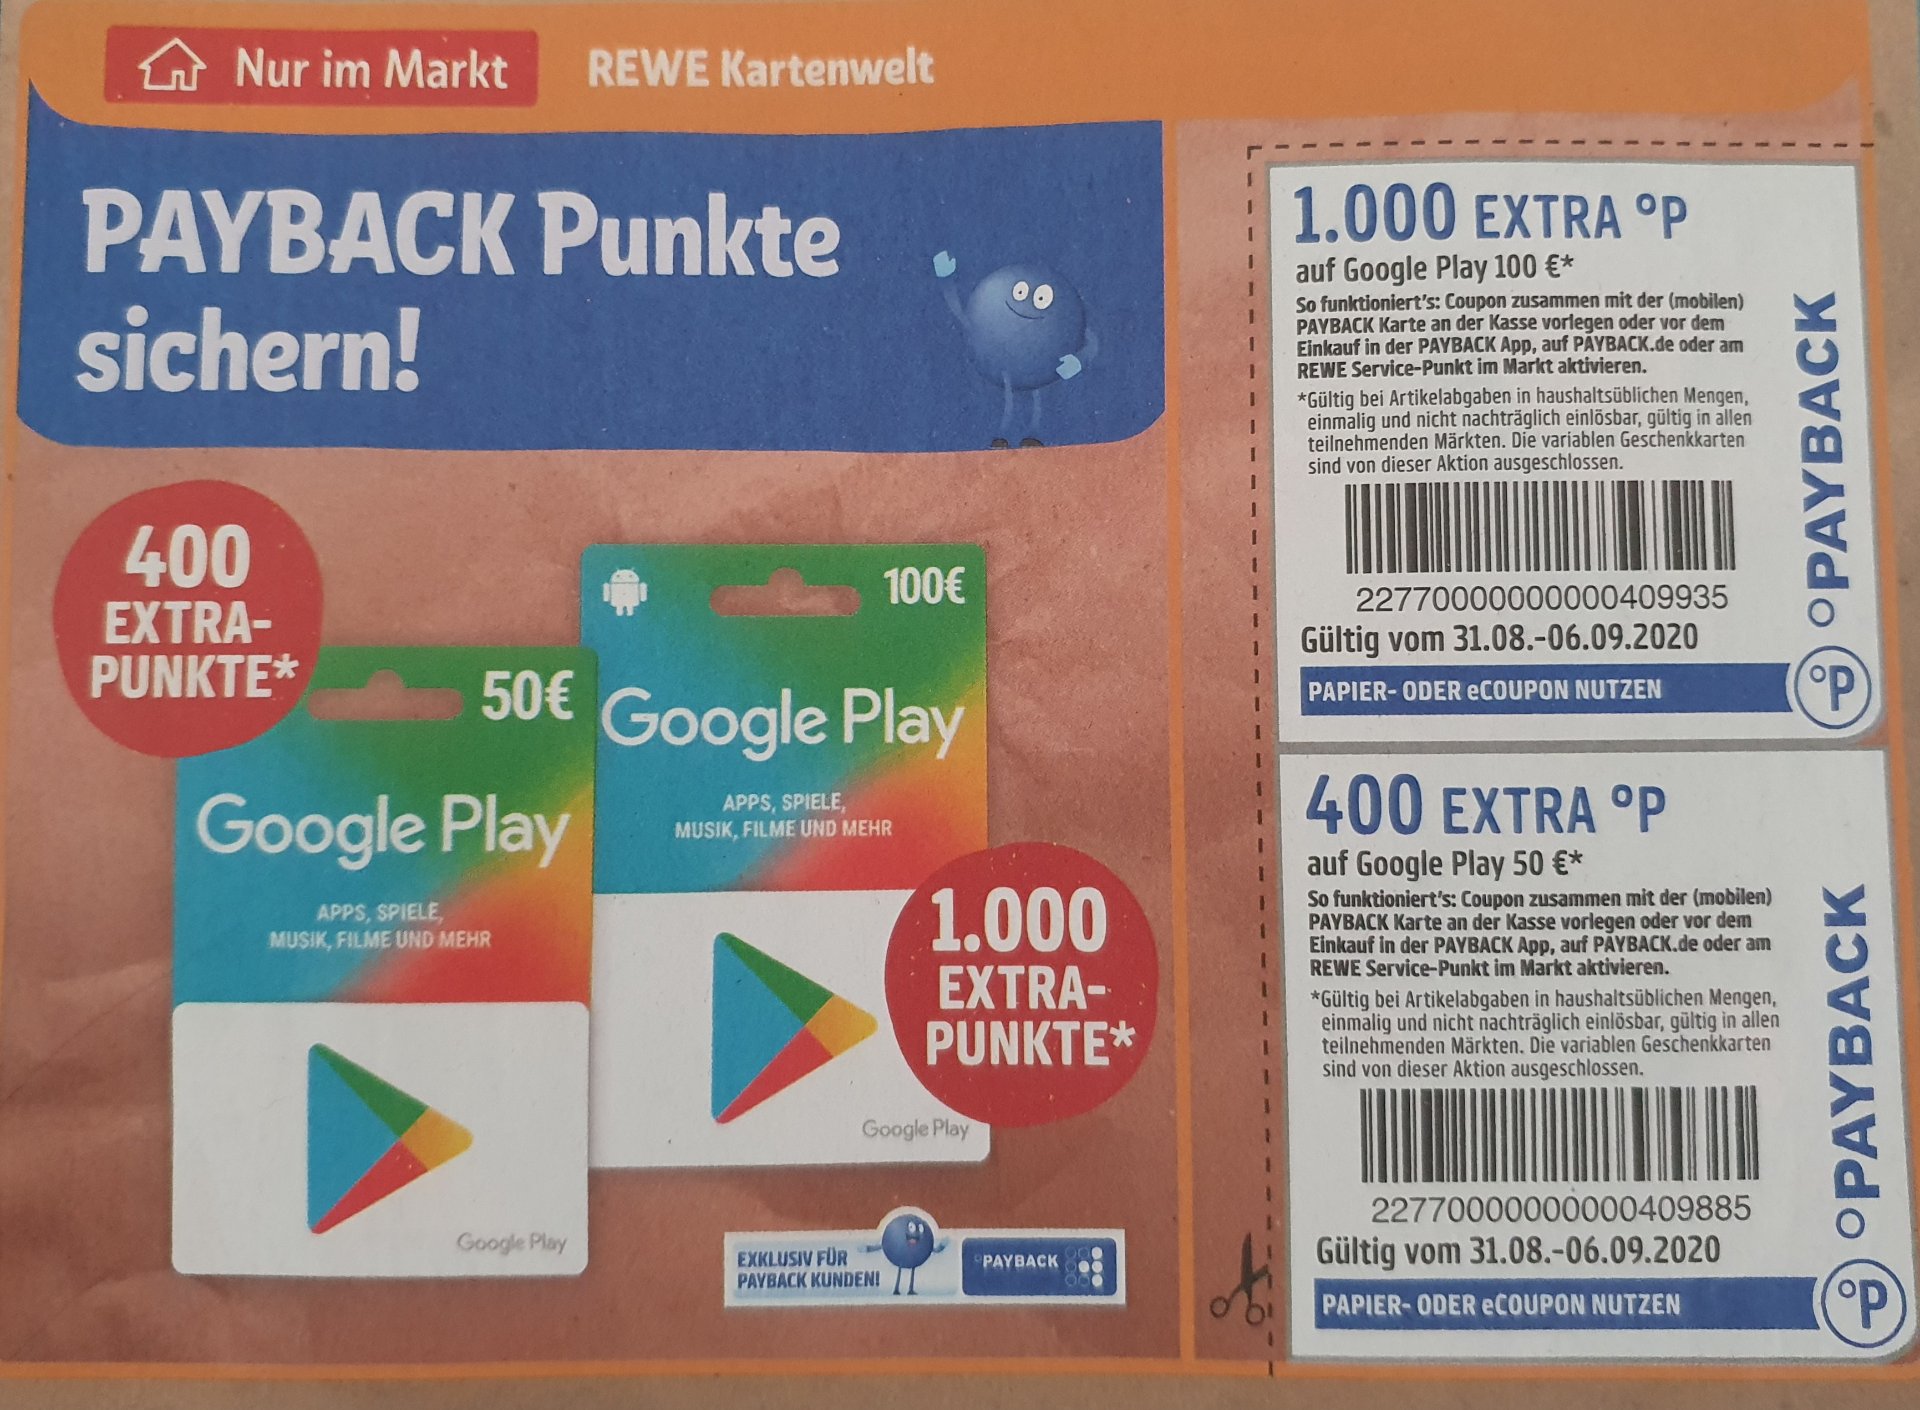 Google Play Guthaben bei Rewe 1.000 Payback Punkte für 100€ Gutschein